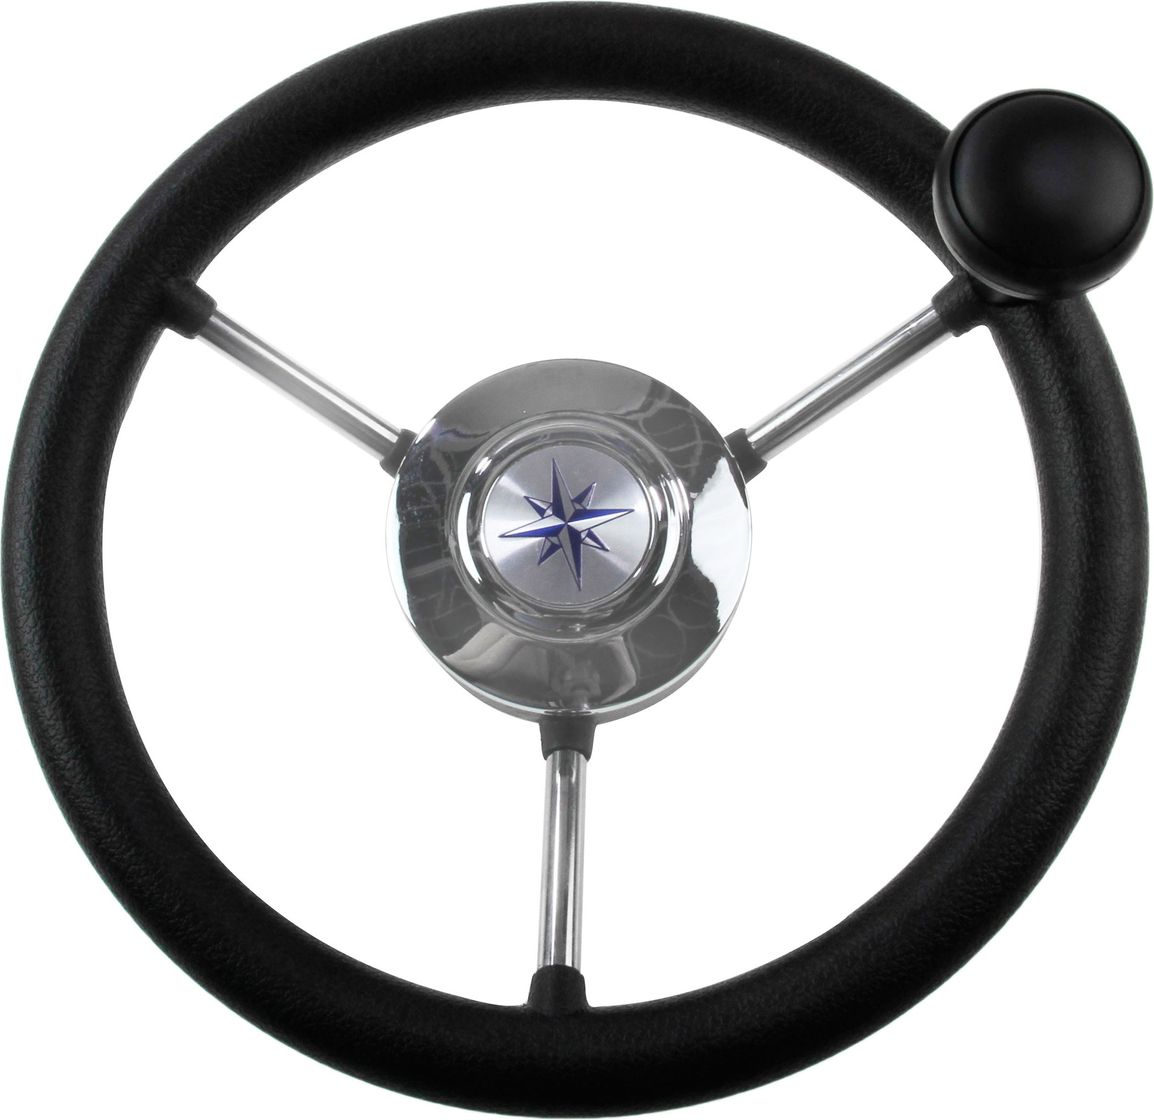 Рулевое колесо LIPARI обод черный, спицы серебряные д. 280 мм со спинером VN828050-01 рулевое колесо leader plast обод серебряные спицы д 360 мм vn8360 01